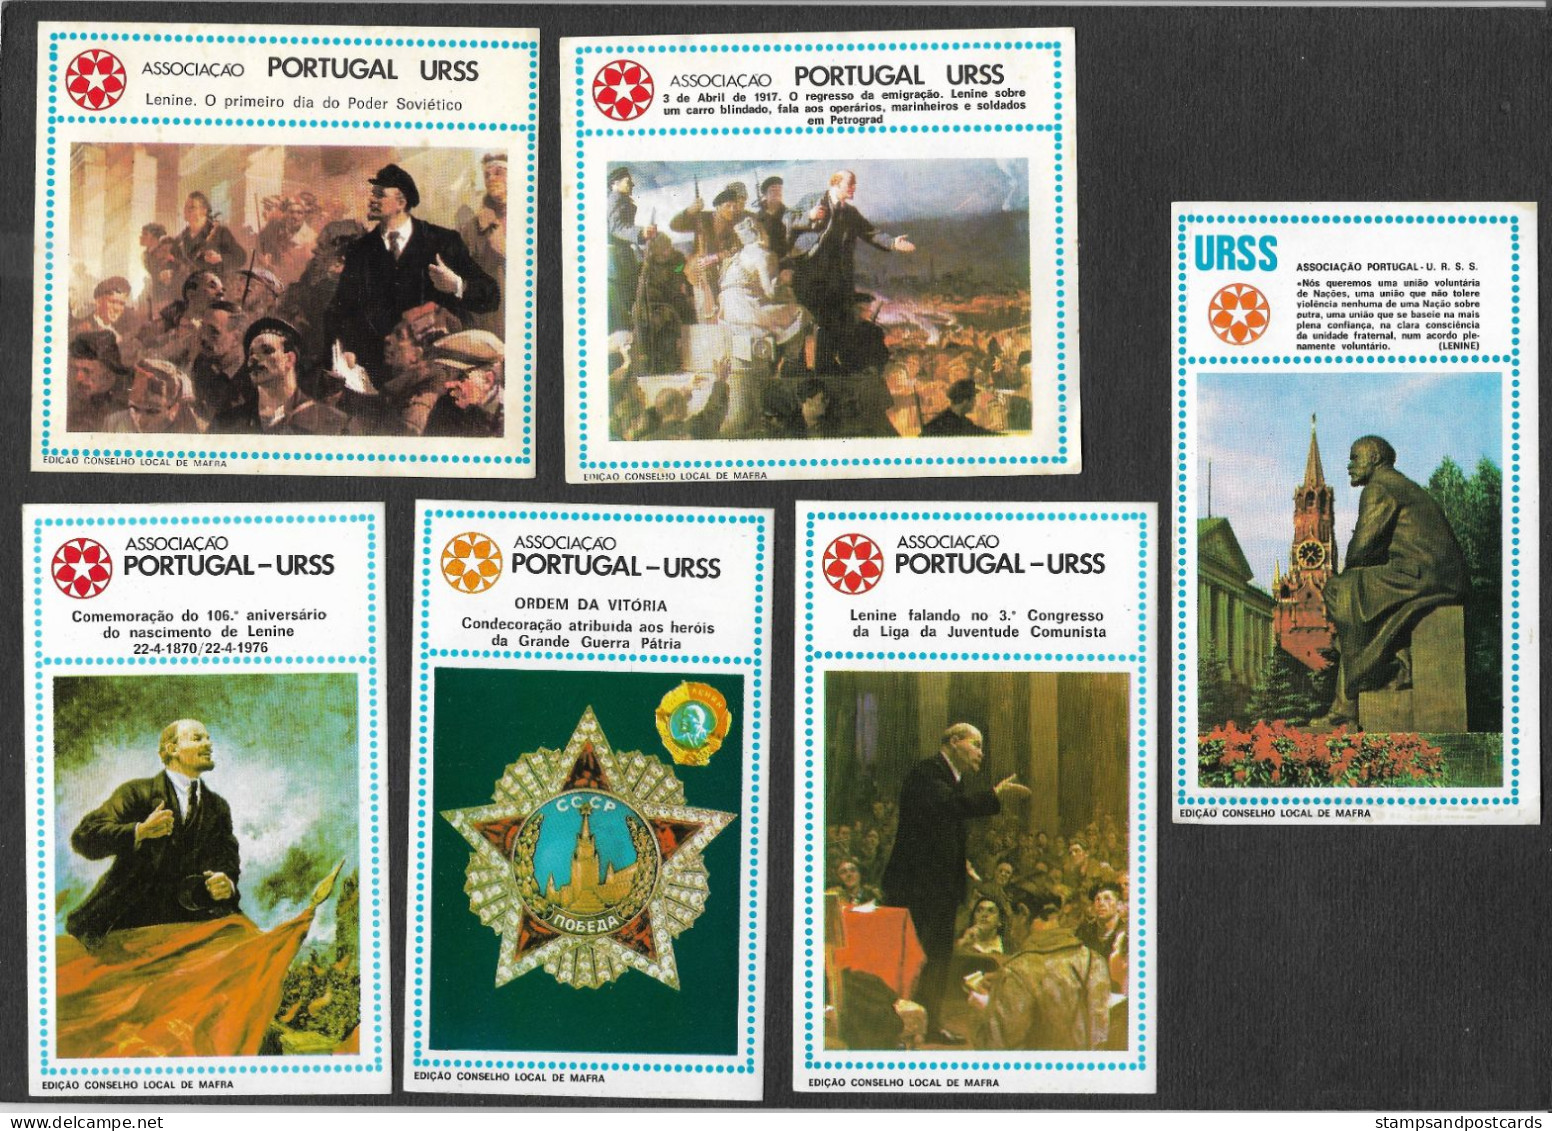 Portugal URSS USSR Association Amitié Union Soviètique Russie Communiste 8 Autocollant Communist Political Sticker 1976 - Stickers